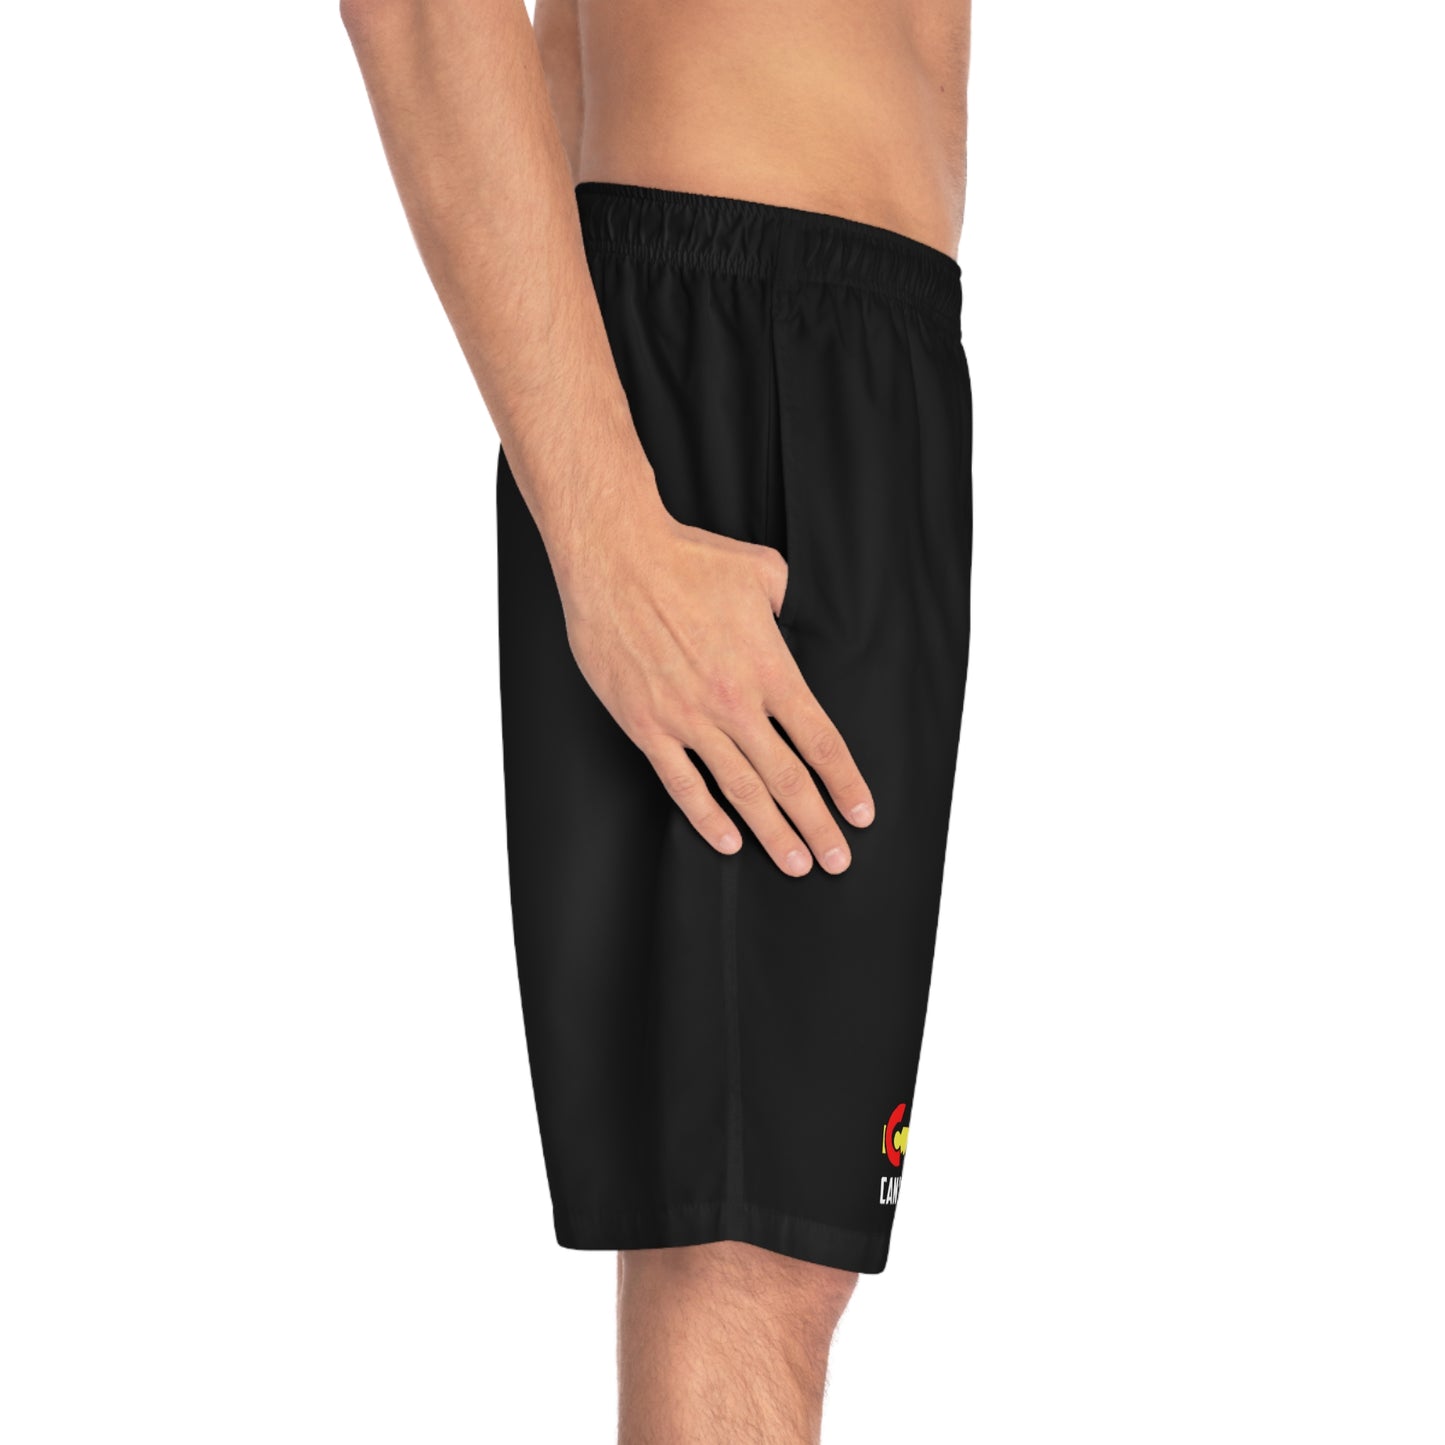 CMC - Board/Gym Shorts